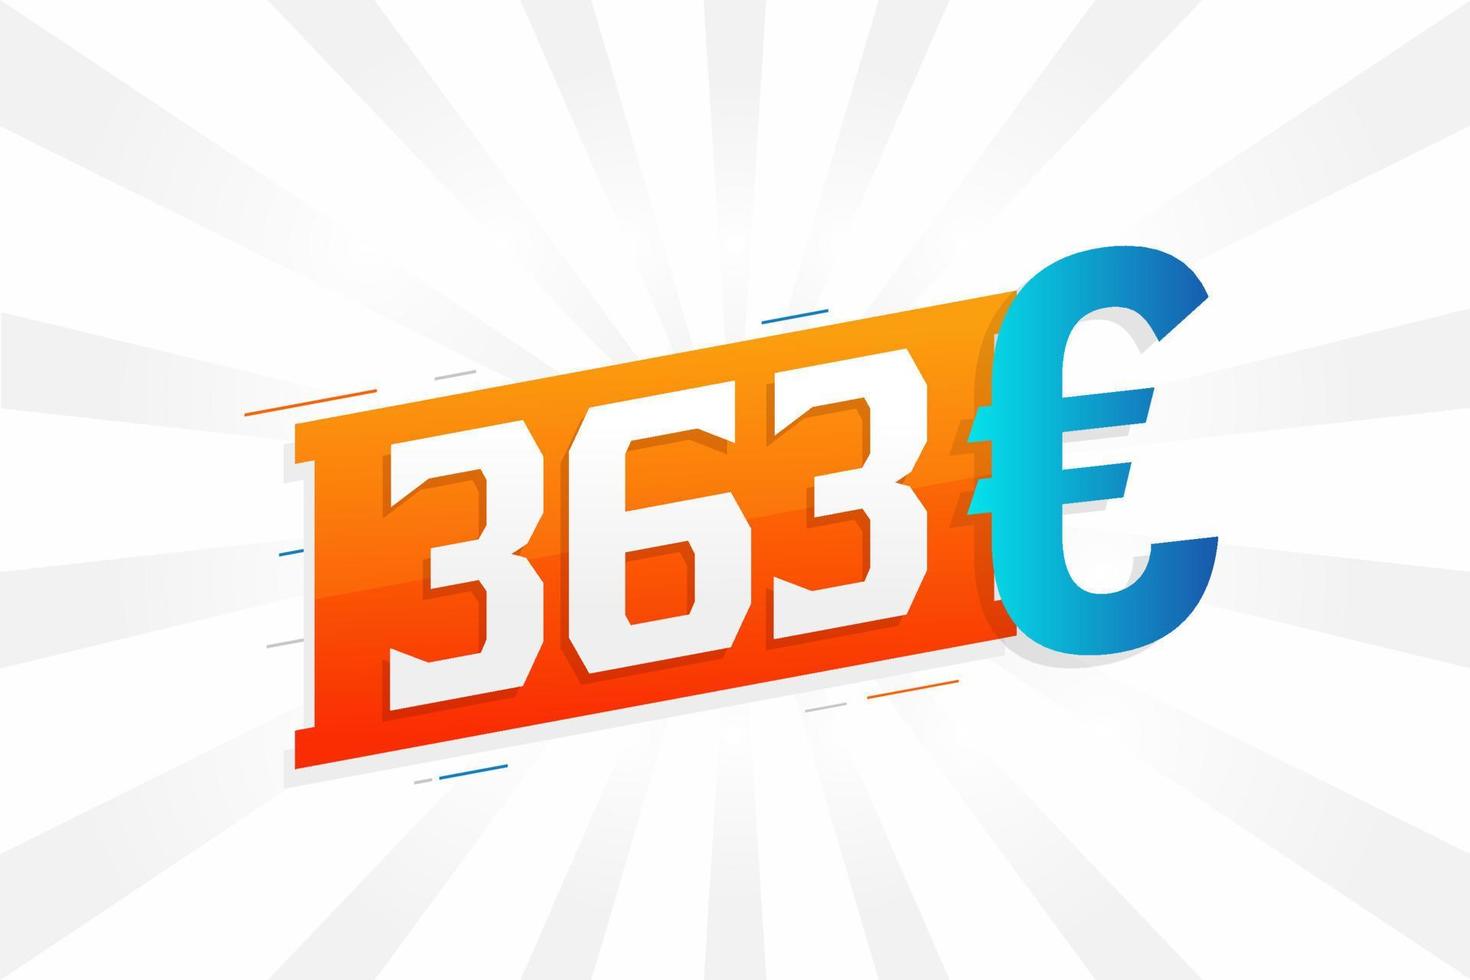 Símbolo de texto de vetor de moeda de 363 euros. vetor de estoque de dinheiro da união europeia de 363 euros